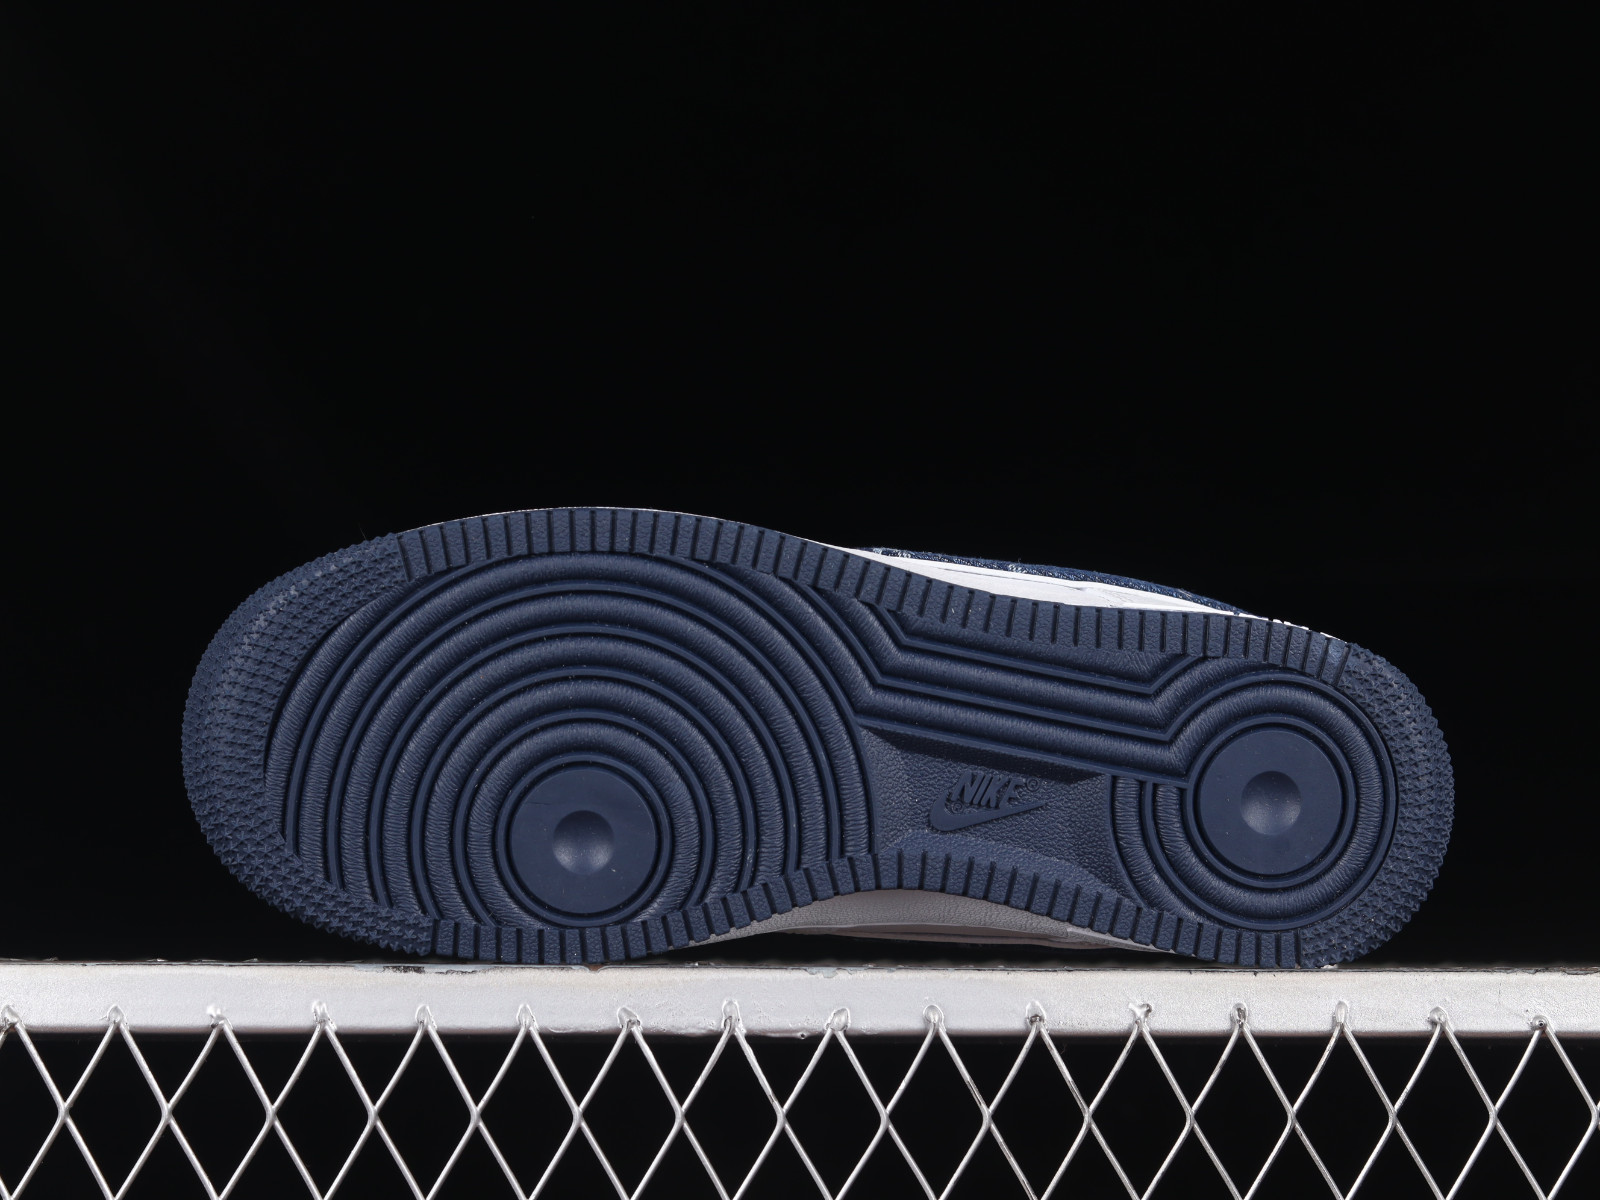 Louis Vuitton x Nike Air Force 1 07 Low Denim Black Beige Shoes